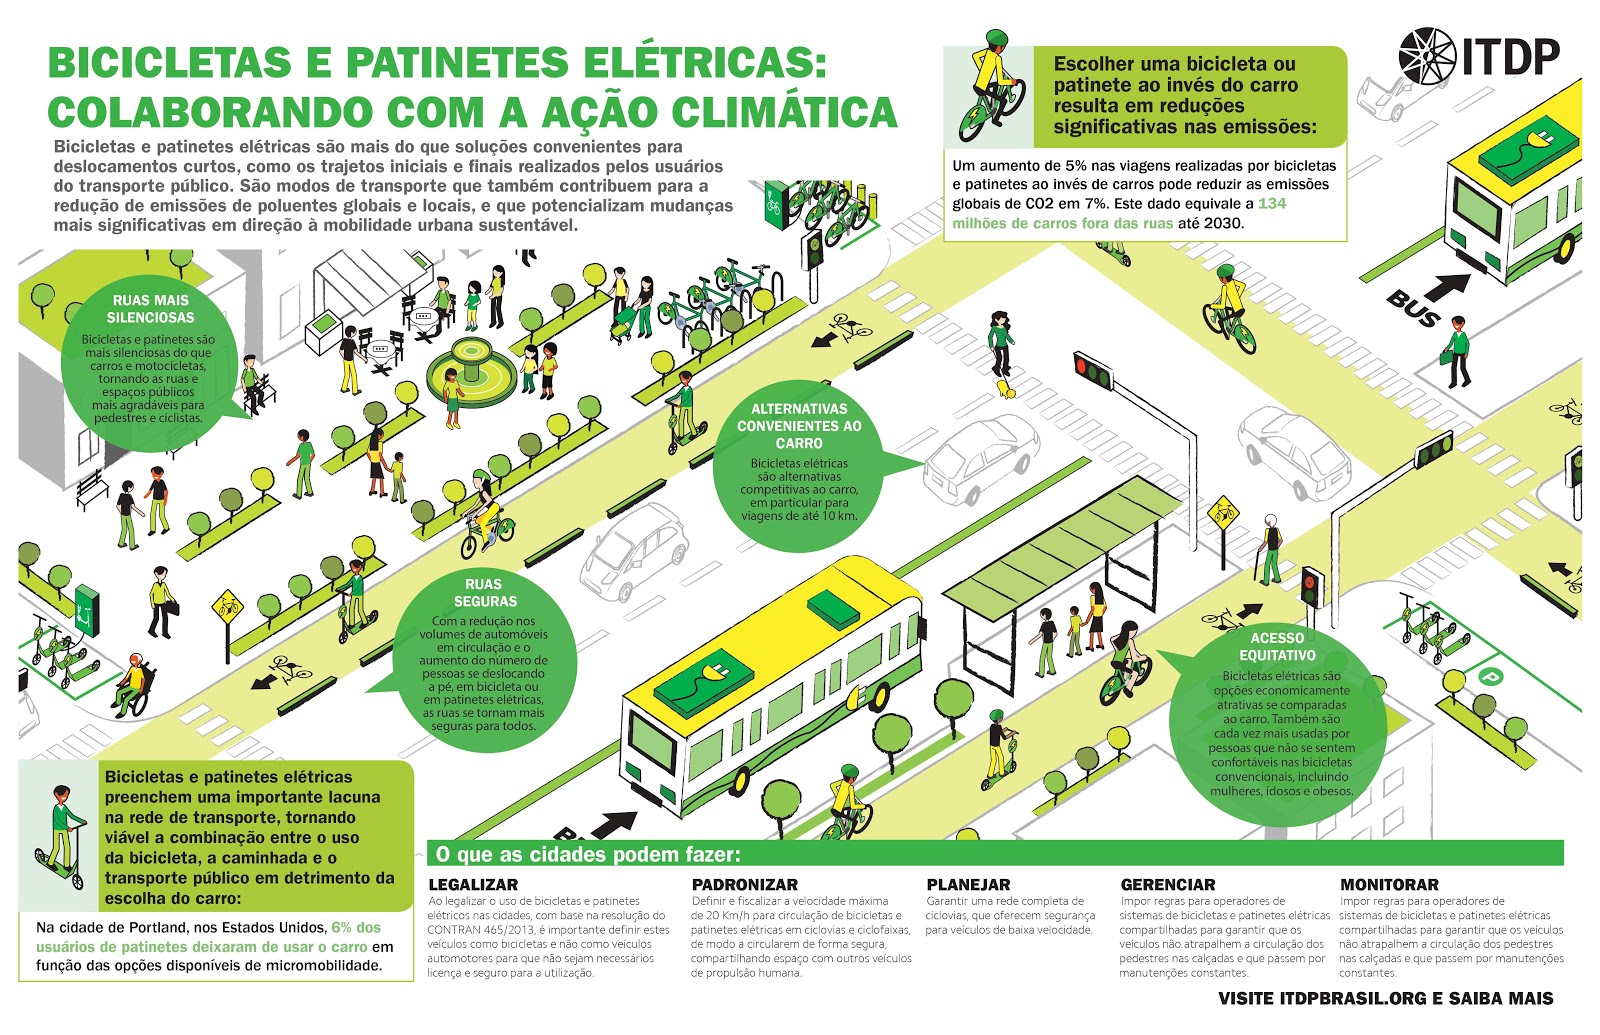 ITDP e-bike infographic in Portuguese